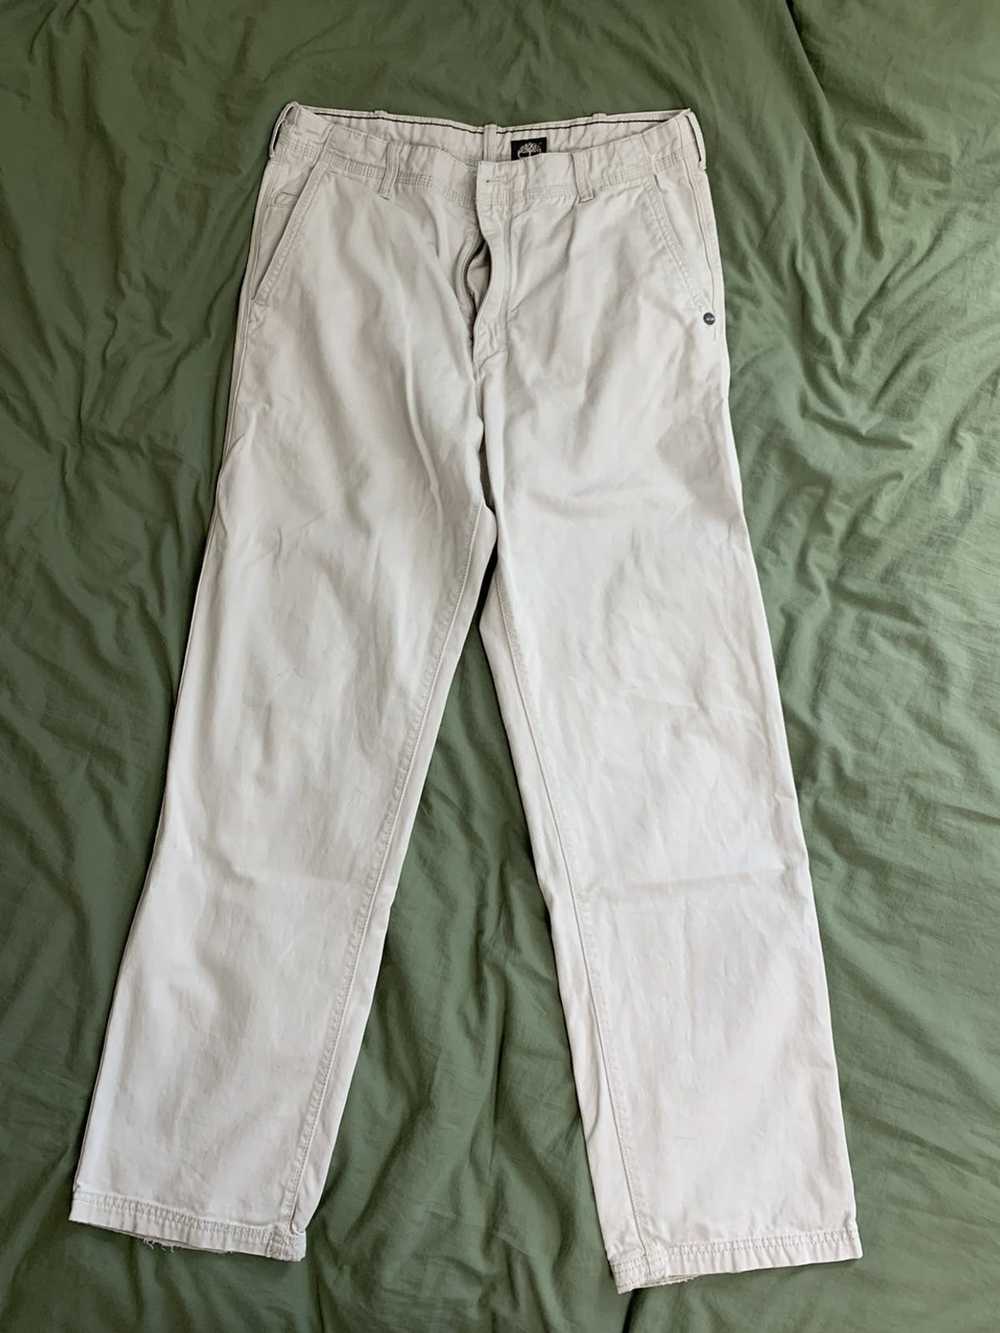 Timberland Timberland White Work Pants Size 36W/3… - image 1